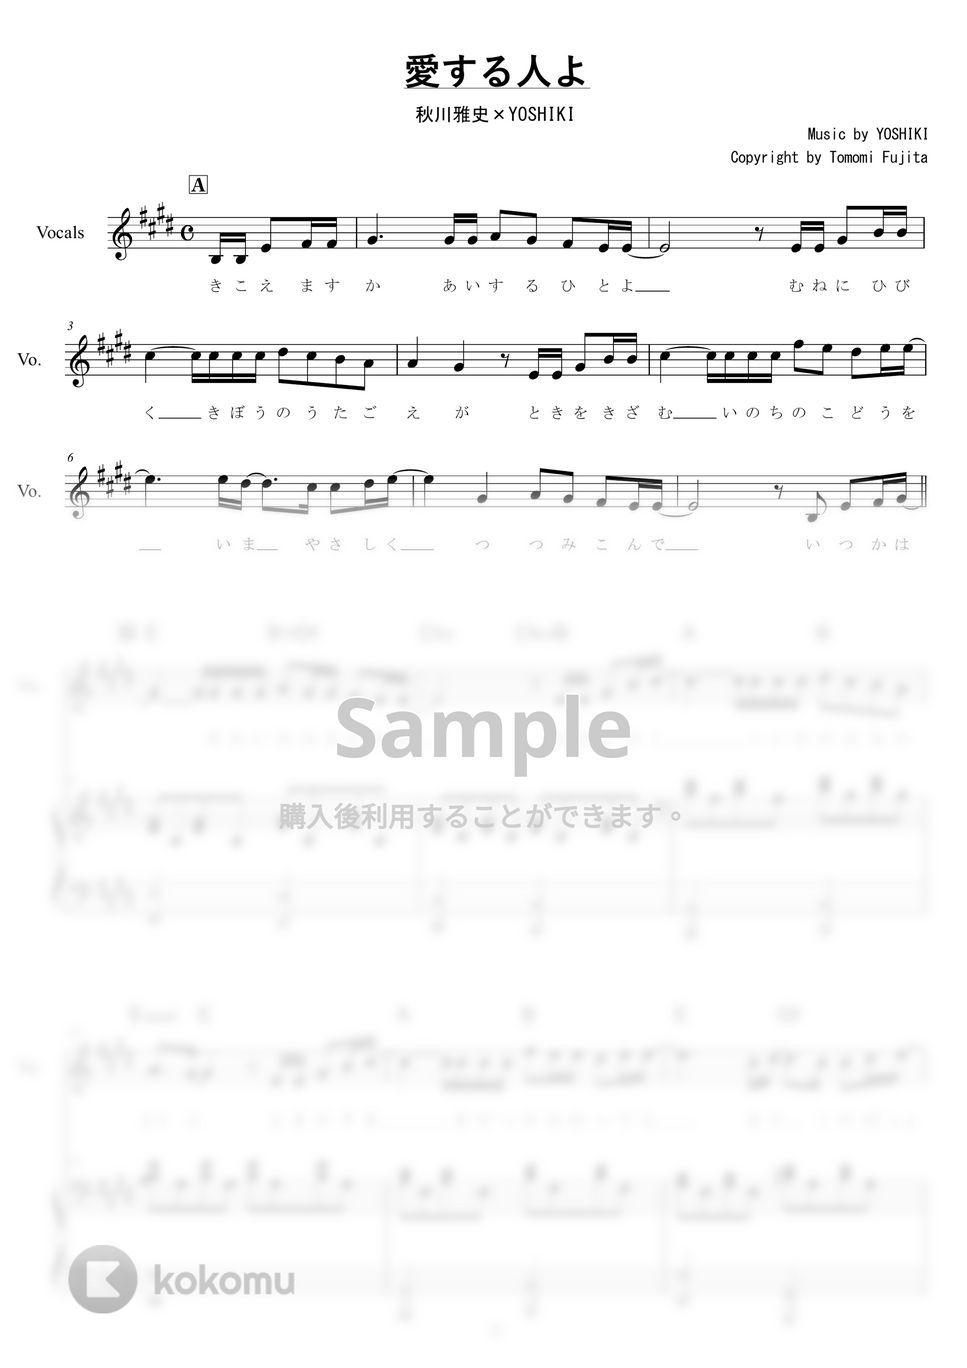 秋川雅史×YOSHIKI - 愛する人よ by piano*score